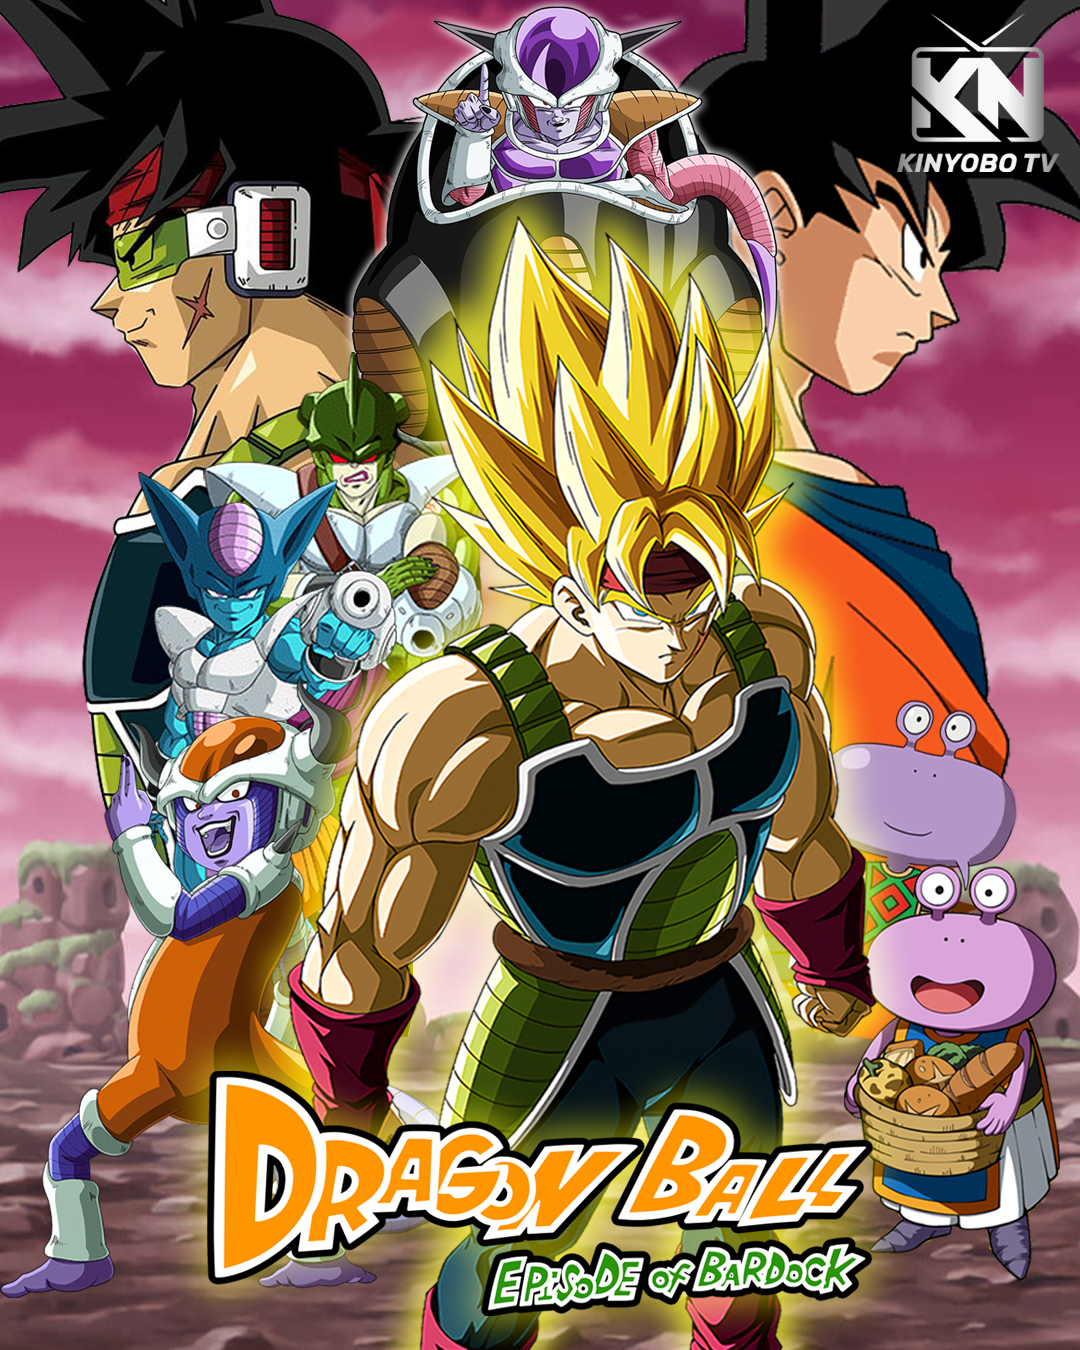 Dragon Ball Episode of Bardock by KinyoboTV on DeviantArt